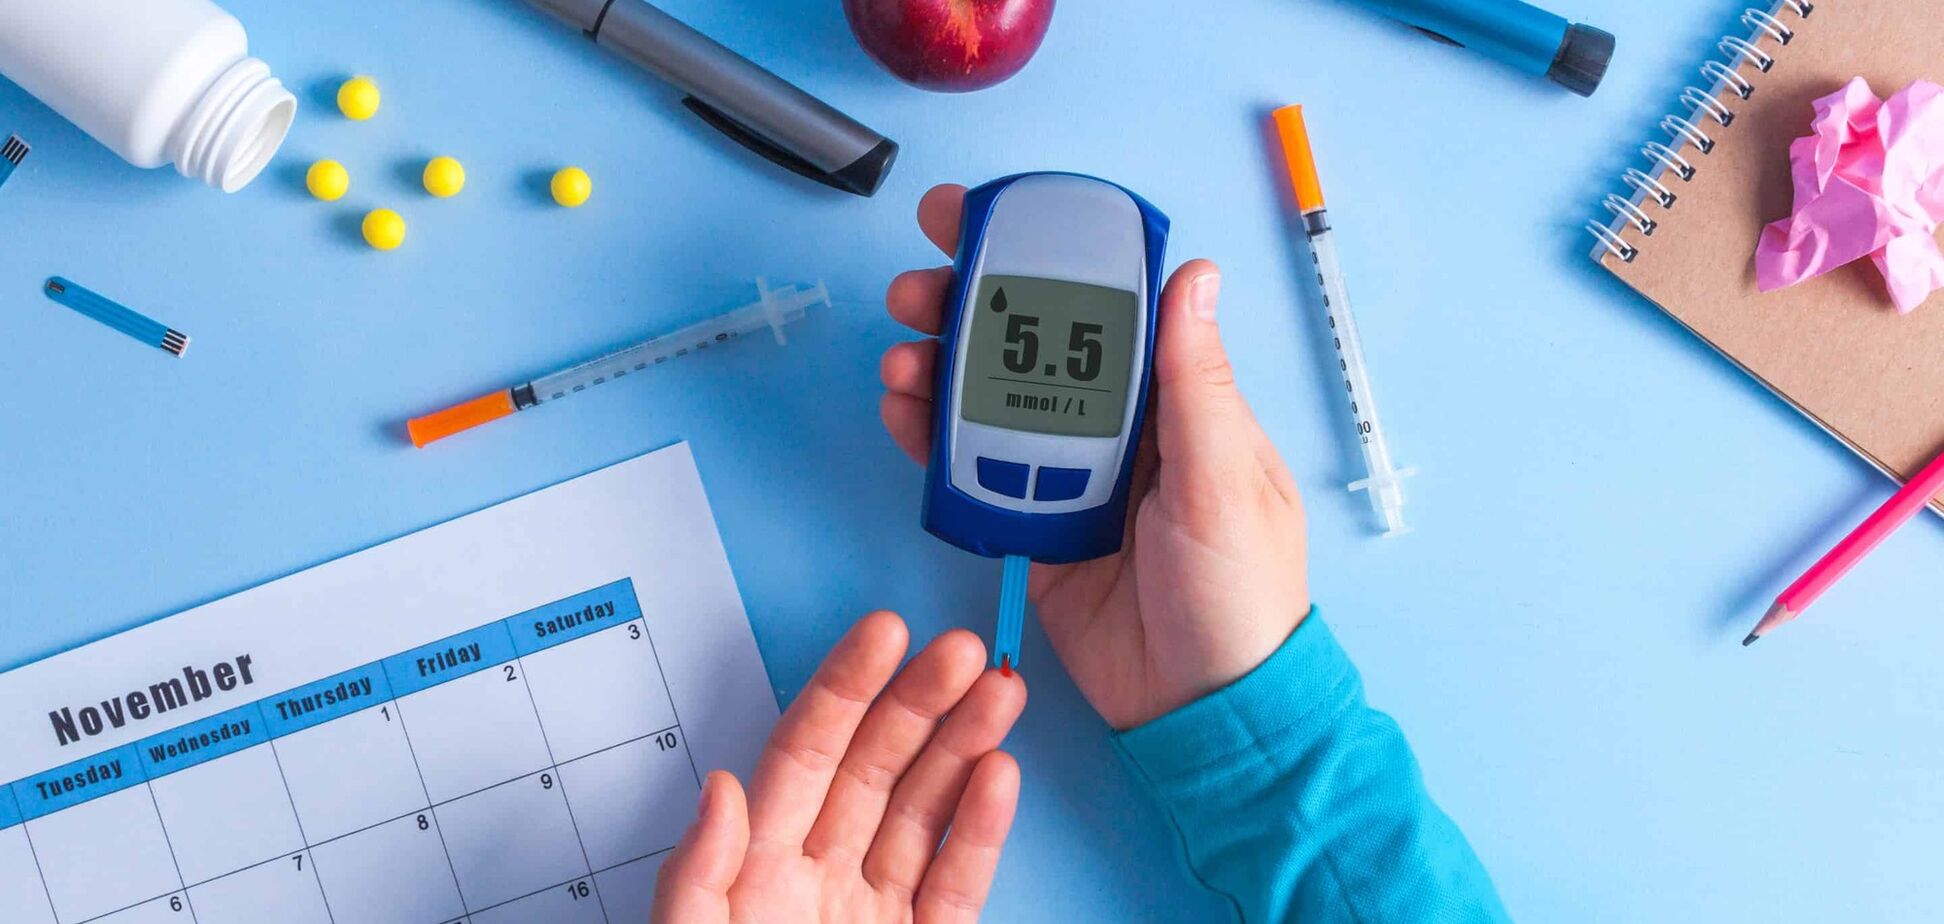 Сахарный диабет не приговор: какие лекарства помогут полноценно жить